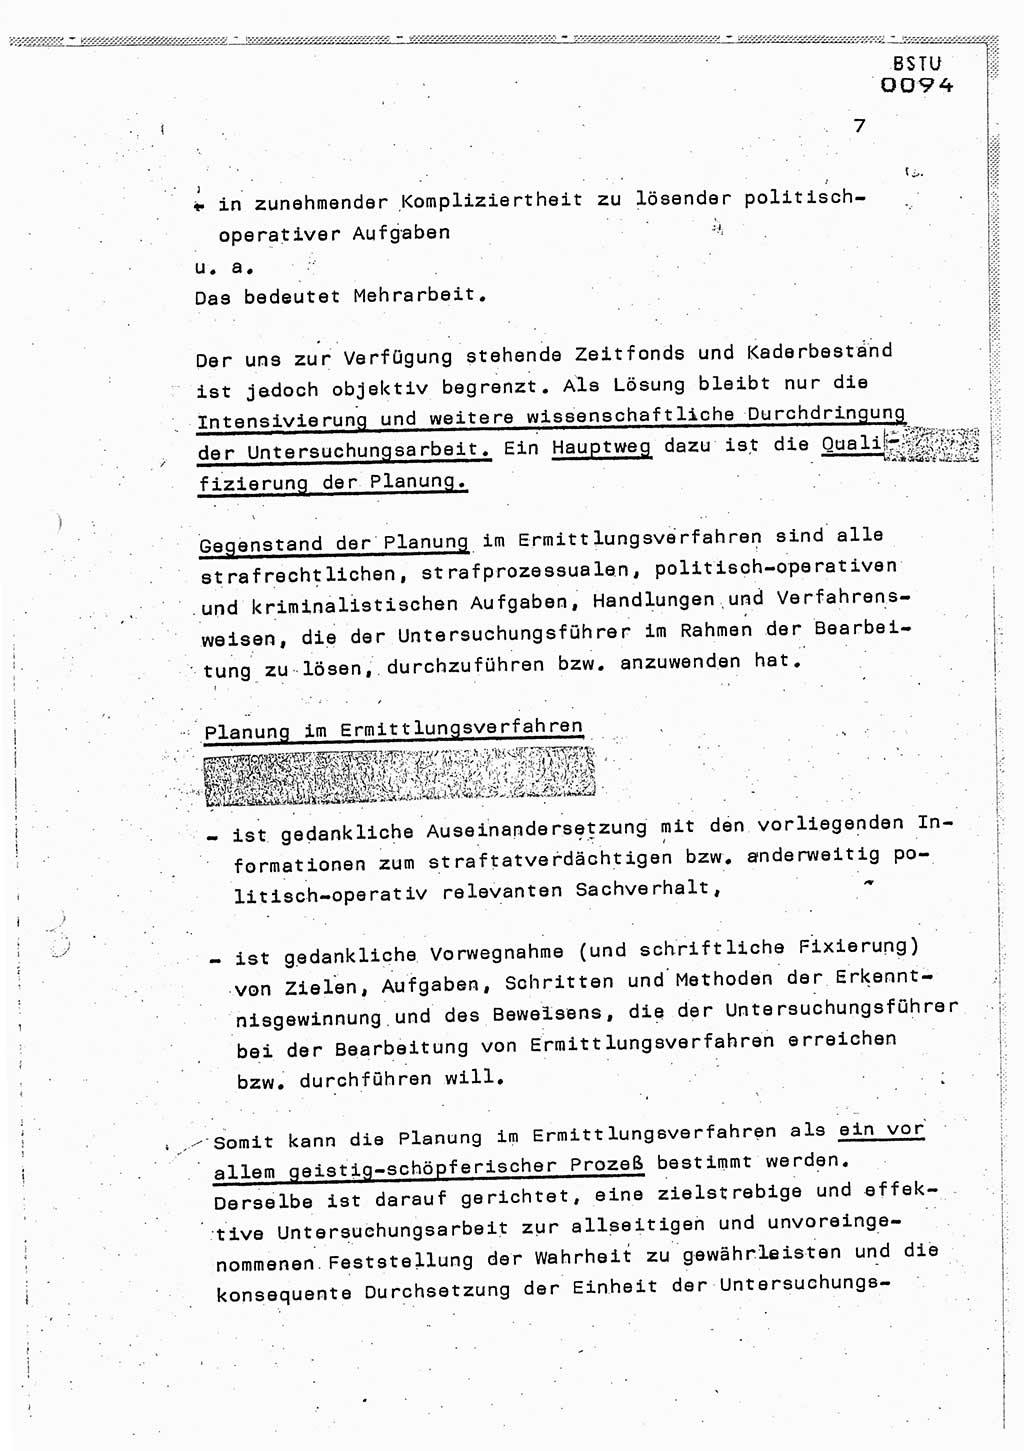 Lektion Ministerium für Staatssicherheit (MfS) [Deutsche Demokratische Republik (DDR)], Hauptabteilung (HA) Ⅸ, Berlin 1987, Seite 7 (Lekt. Pln. Bearb. EV MfS DDR HA Ⅸ /87 1987, S. 7)